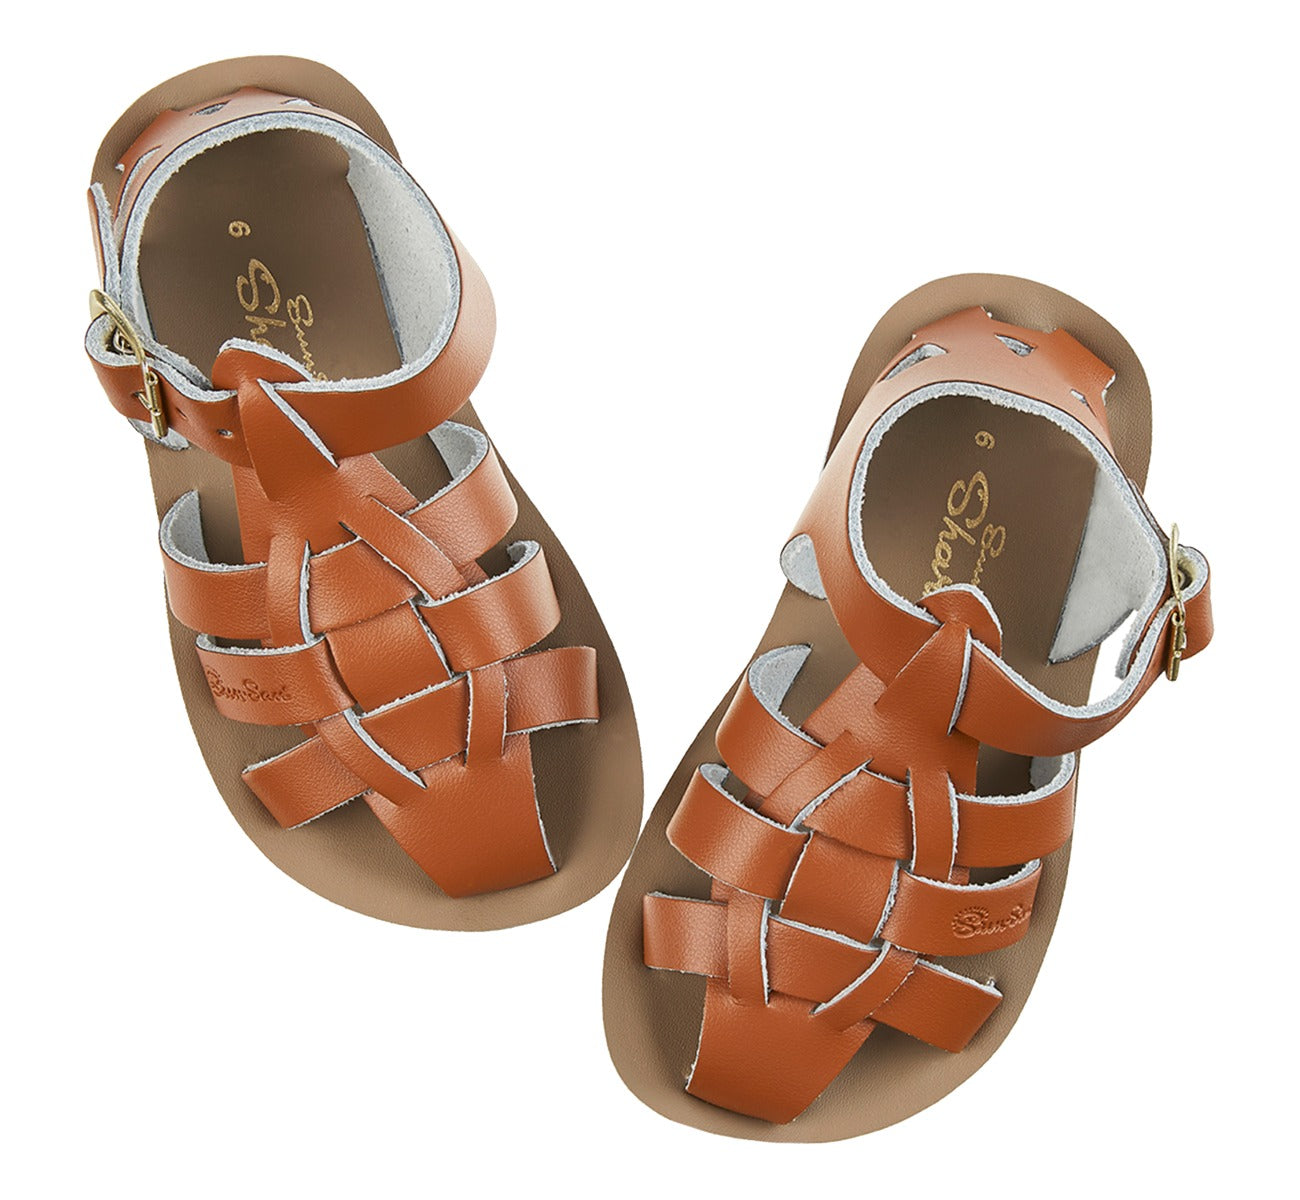 Shark Tan Sandals for Kids - Salt-Water Sandals Shop Europe